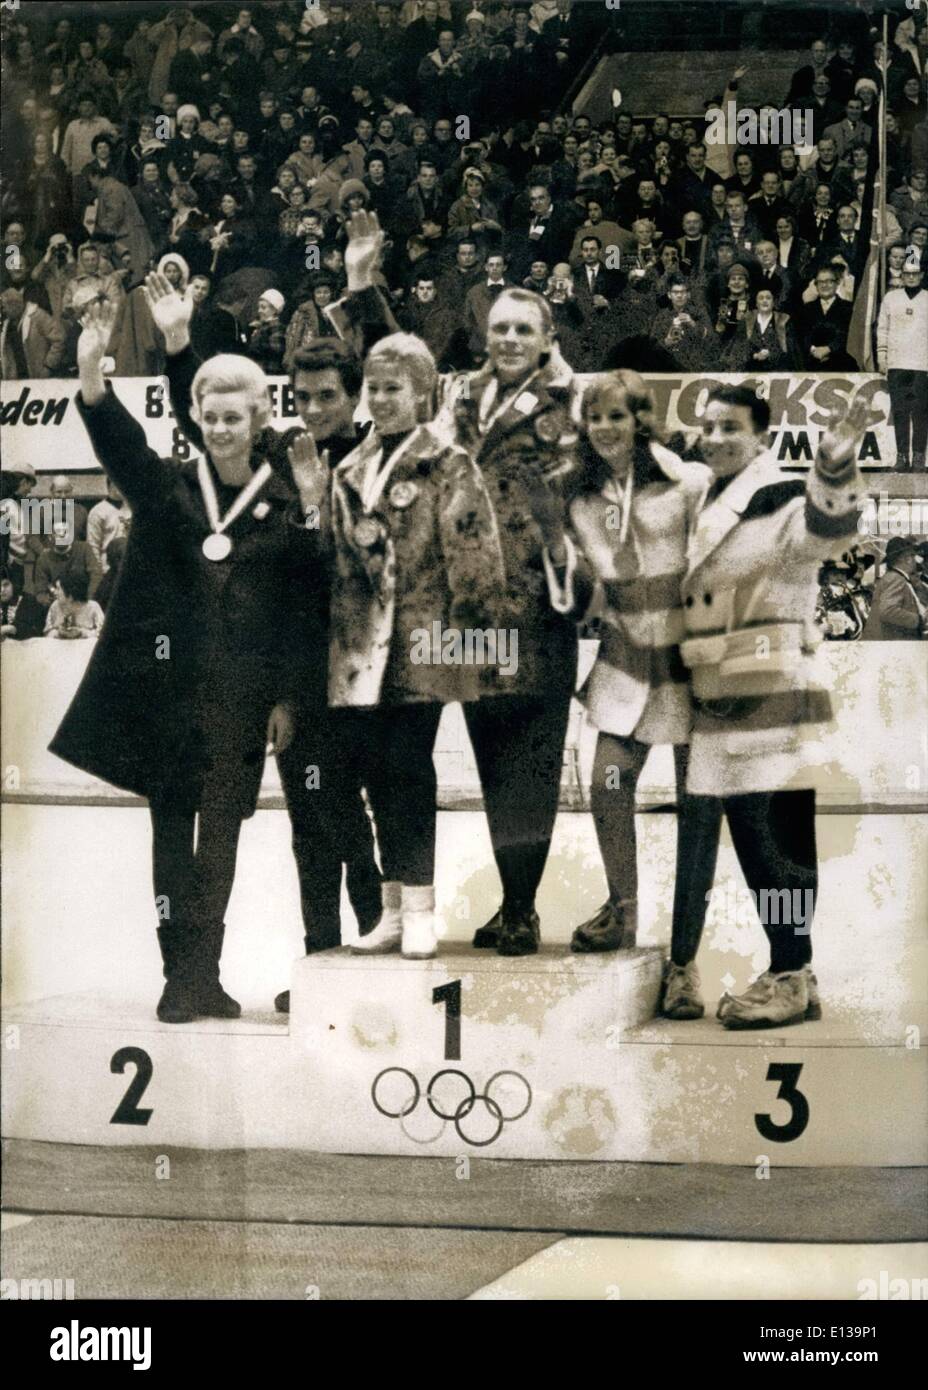 29 février 2012 - Jeux Olympiques d'hiver 1964 Innsbruck, des couples de patinage artistique. Centre : Gold Medals Belousova/Protopopow, URSS. Banque D'Images